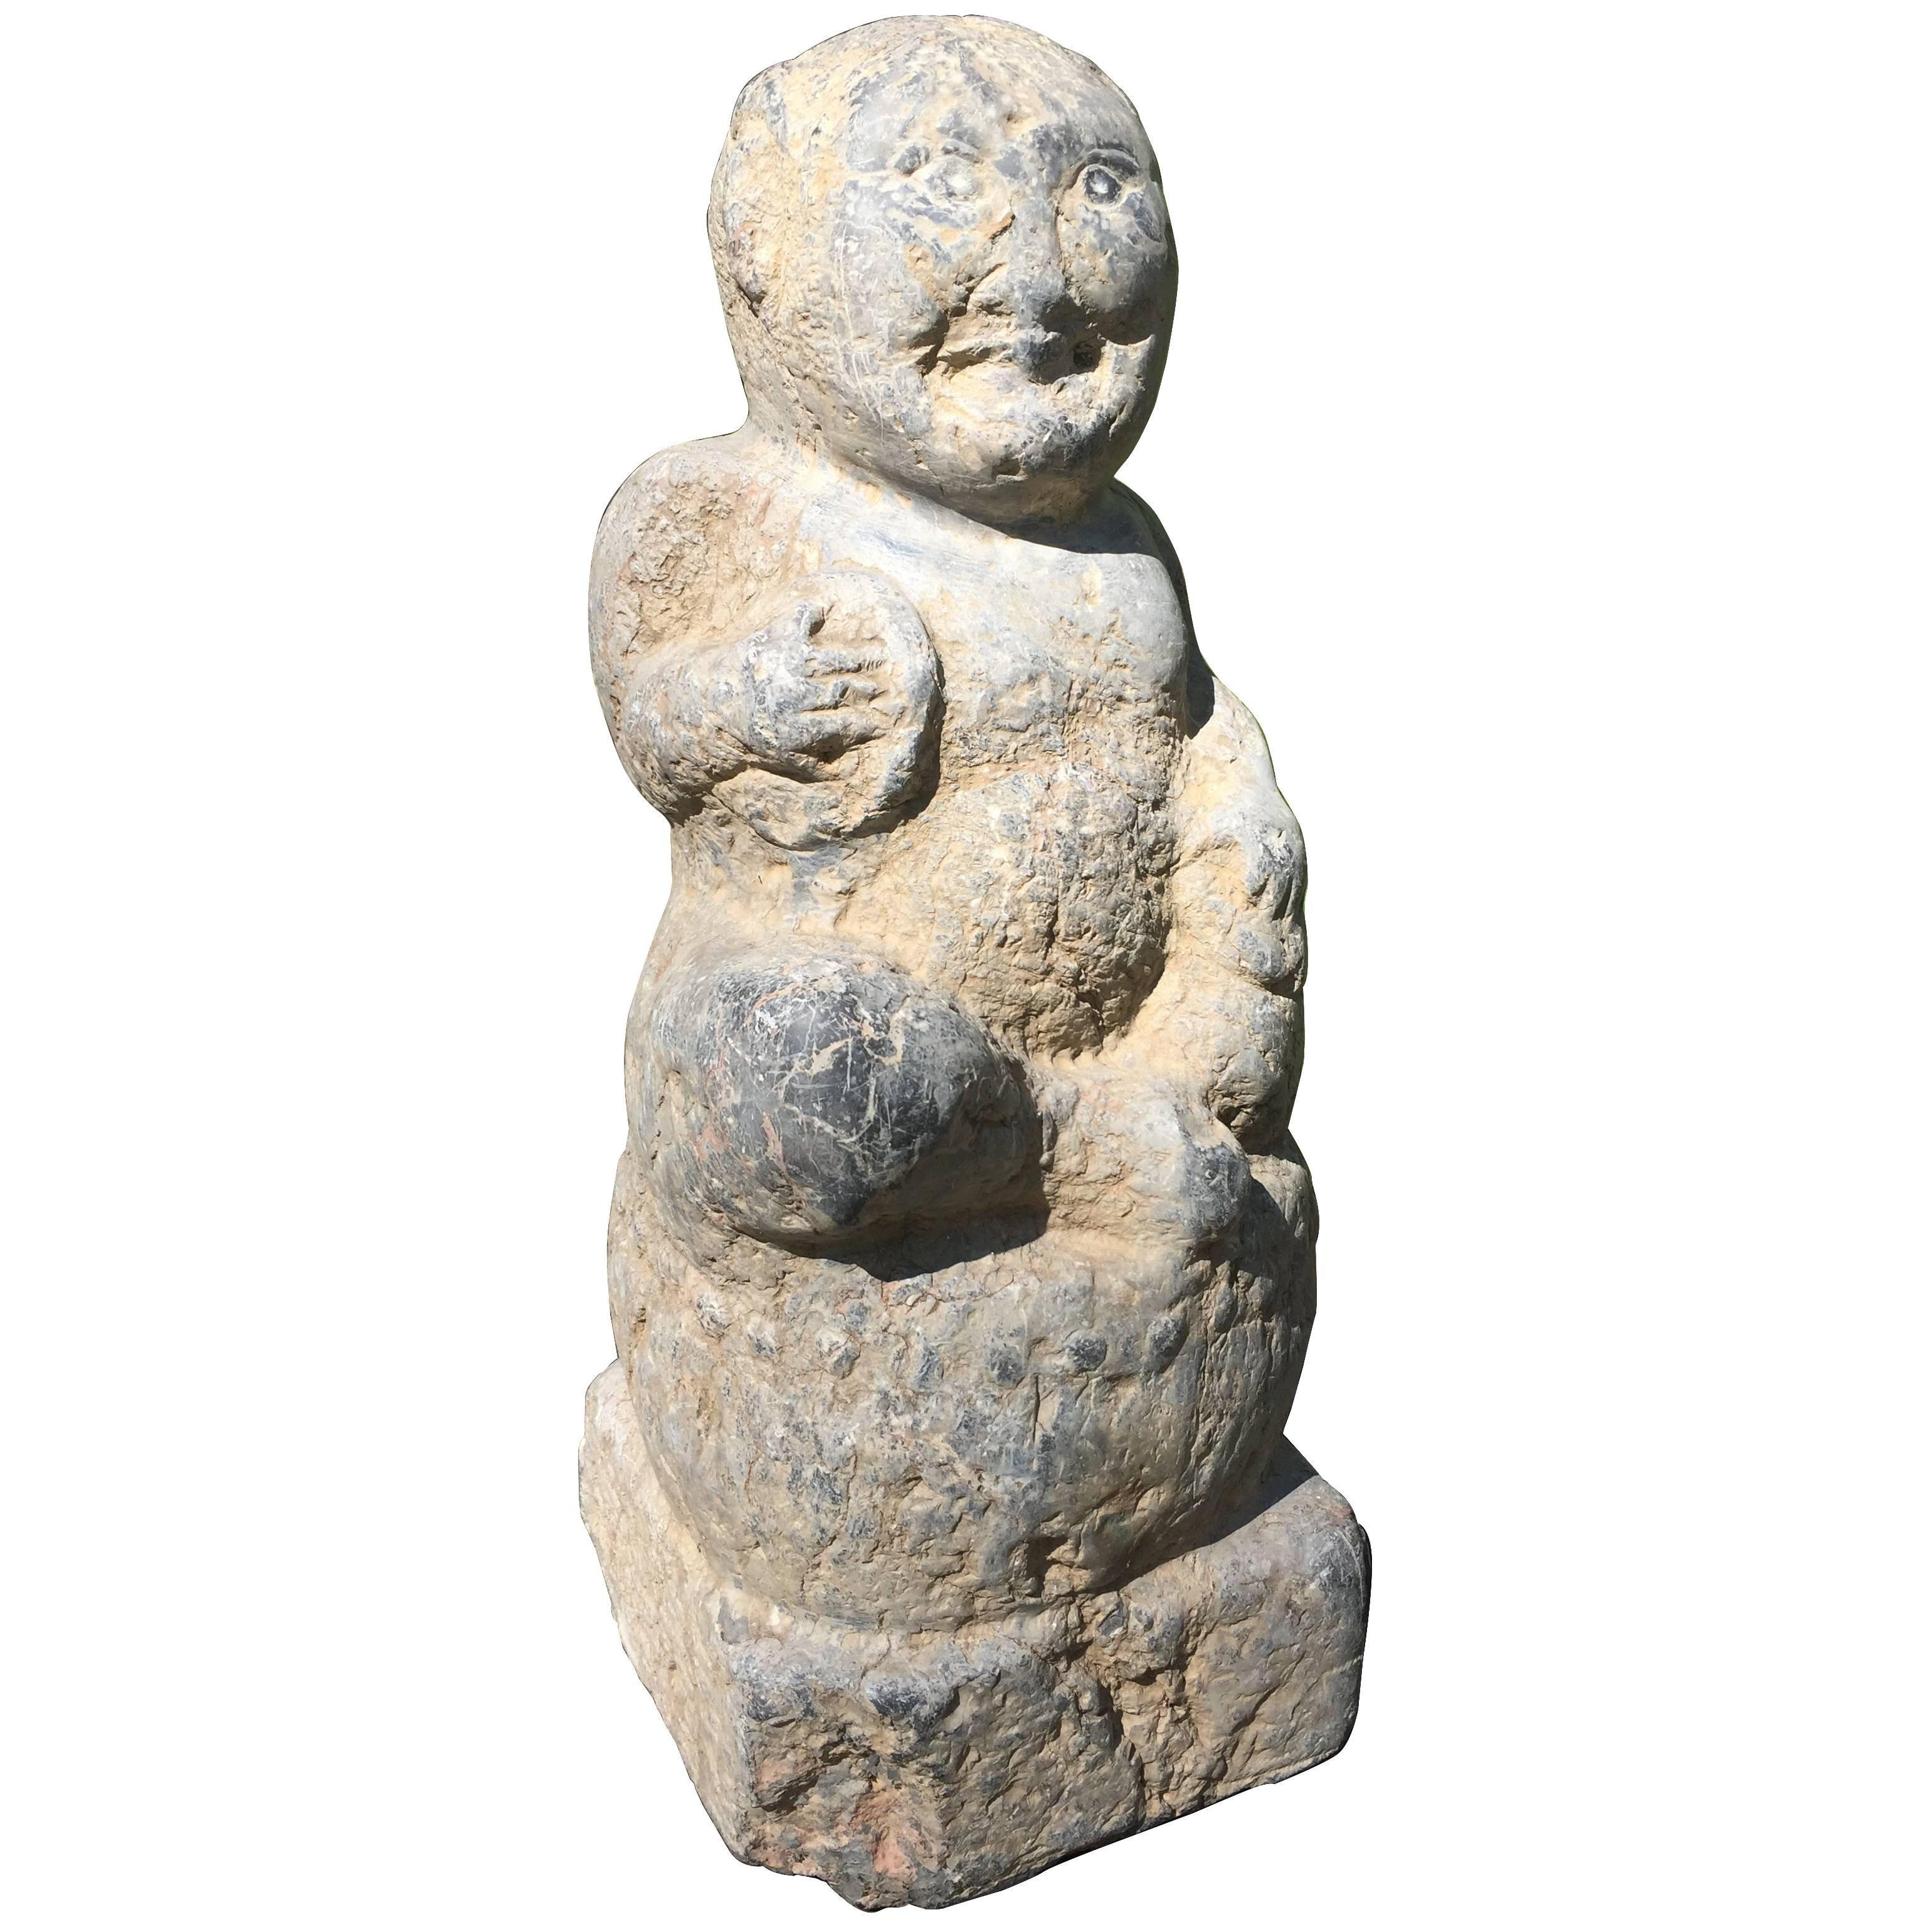 Tourneur de pierre ancien de Chine, dynastie Han 200 avant J.-C.